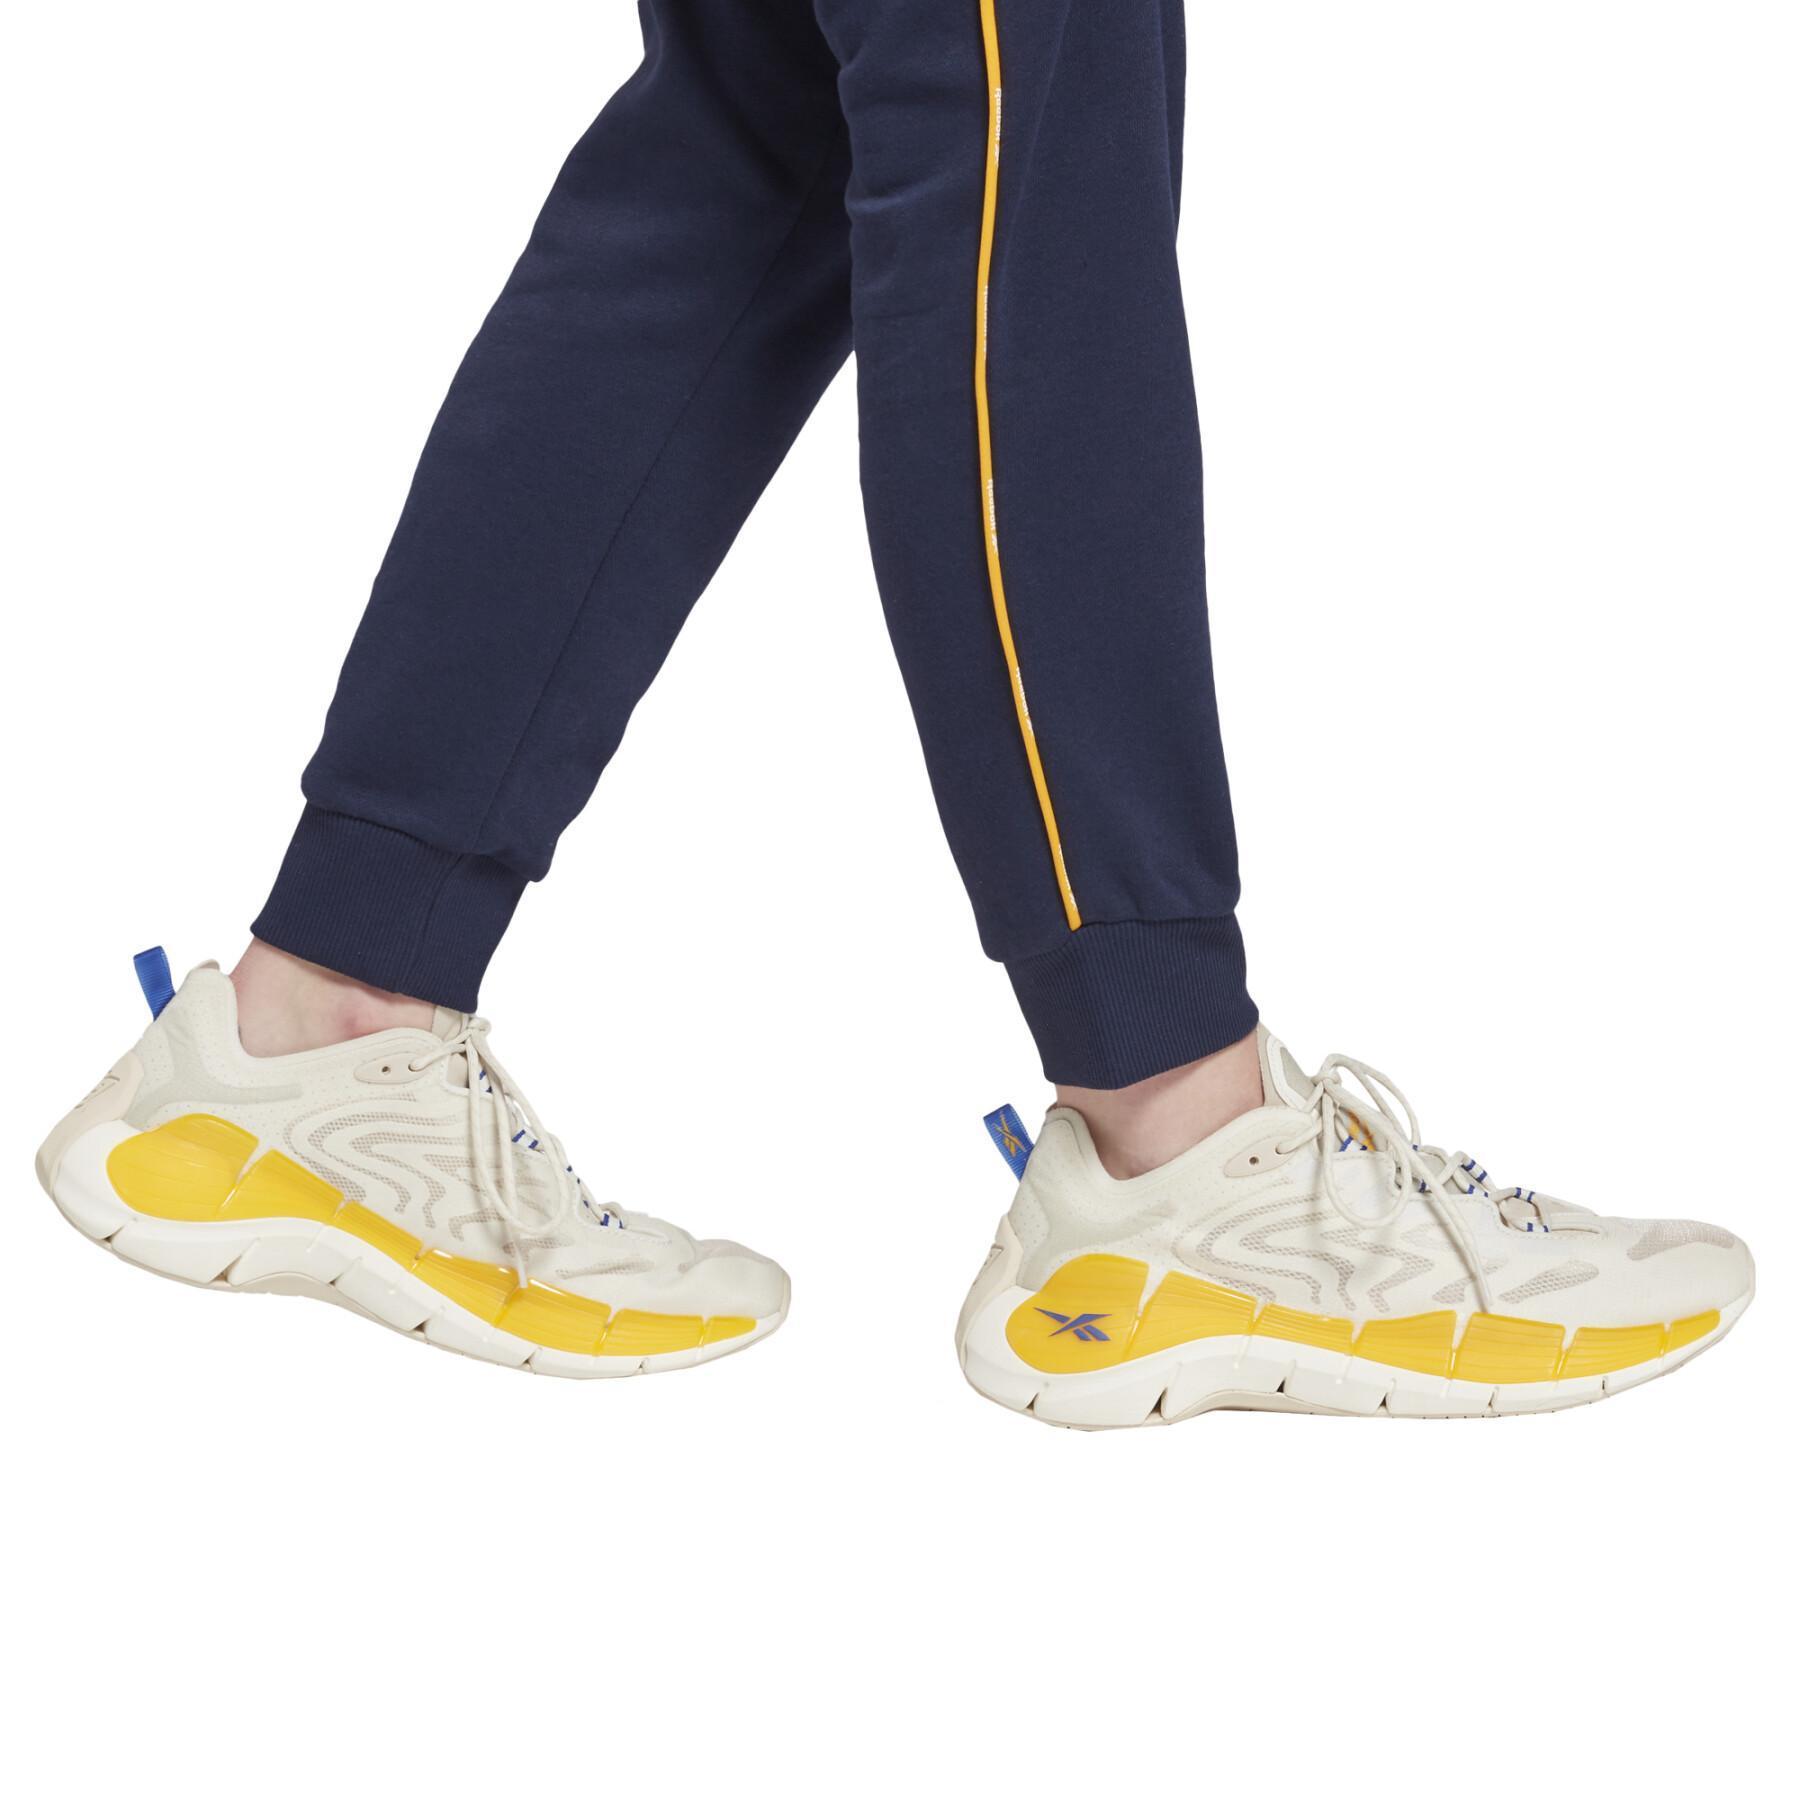 Women's jogging suit Reebok Piping